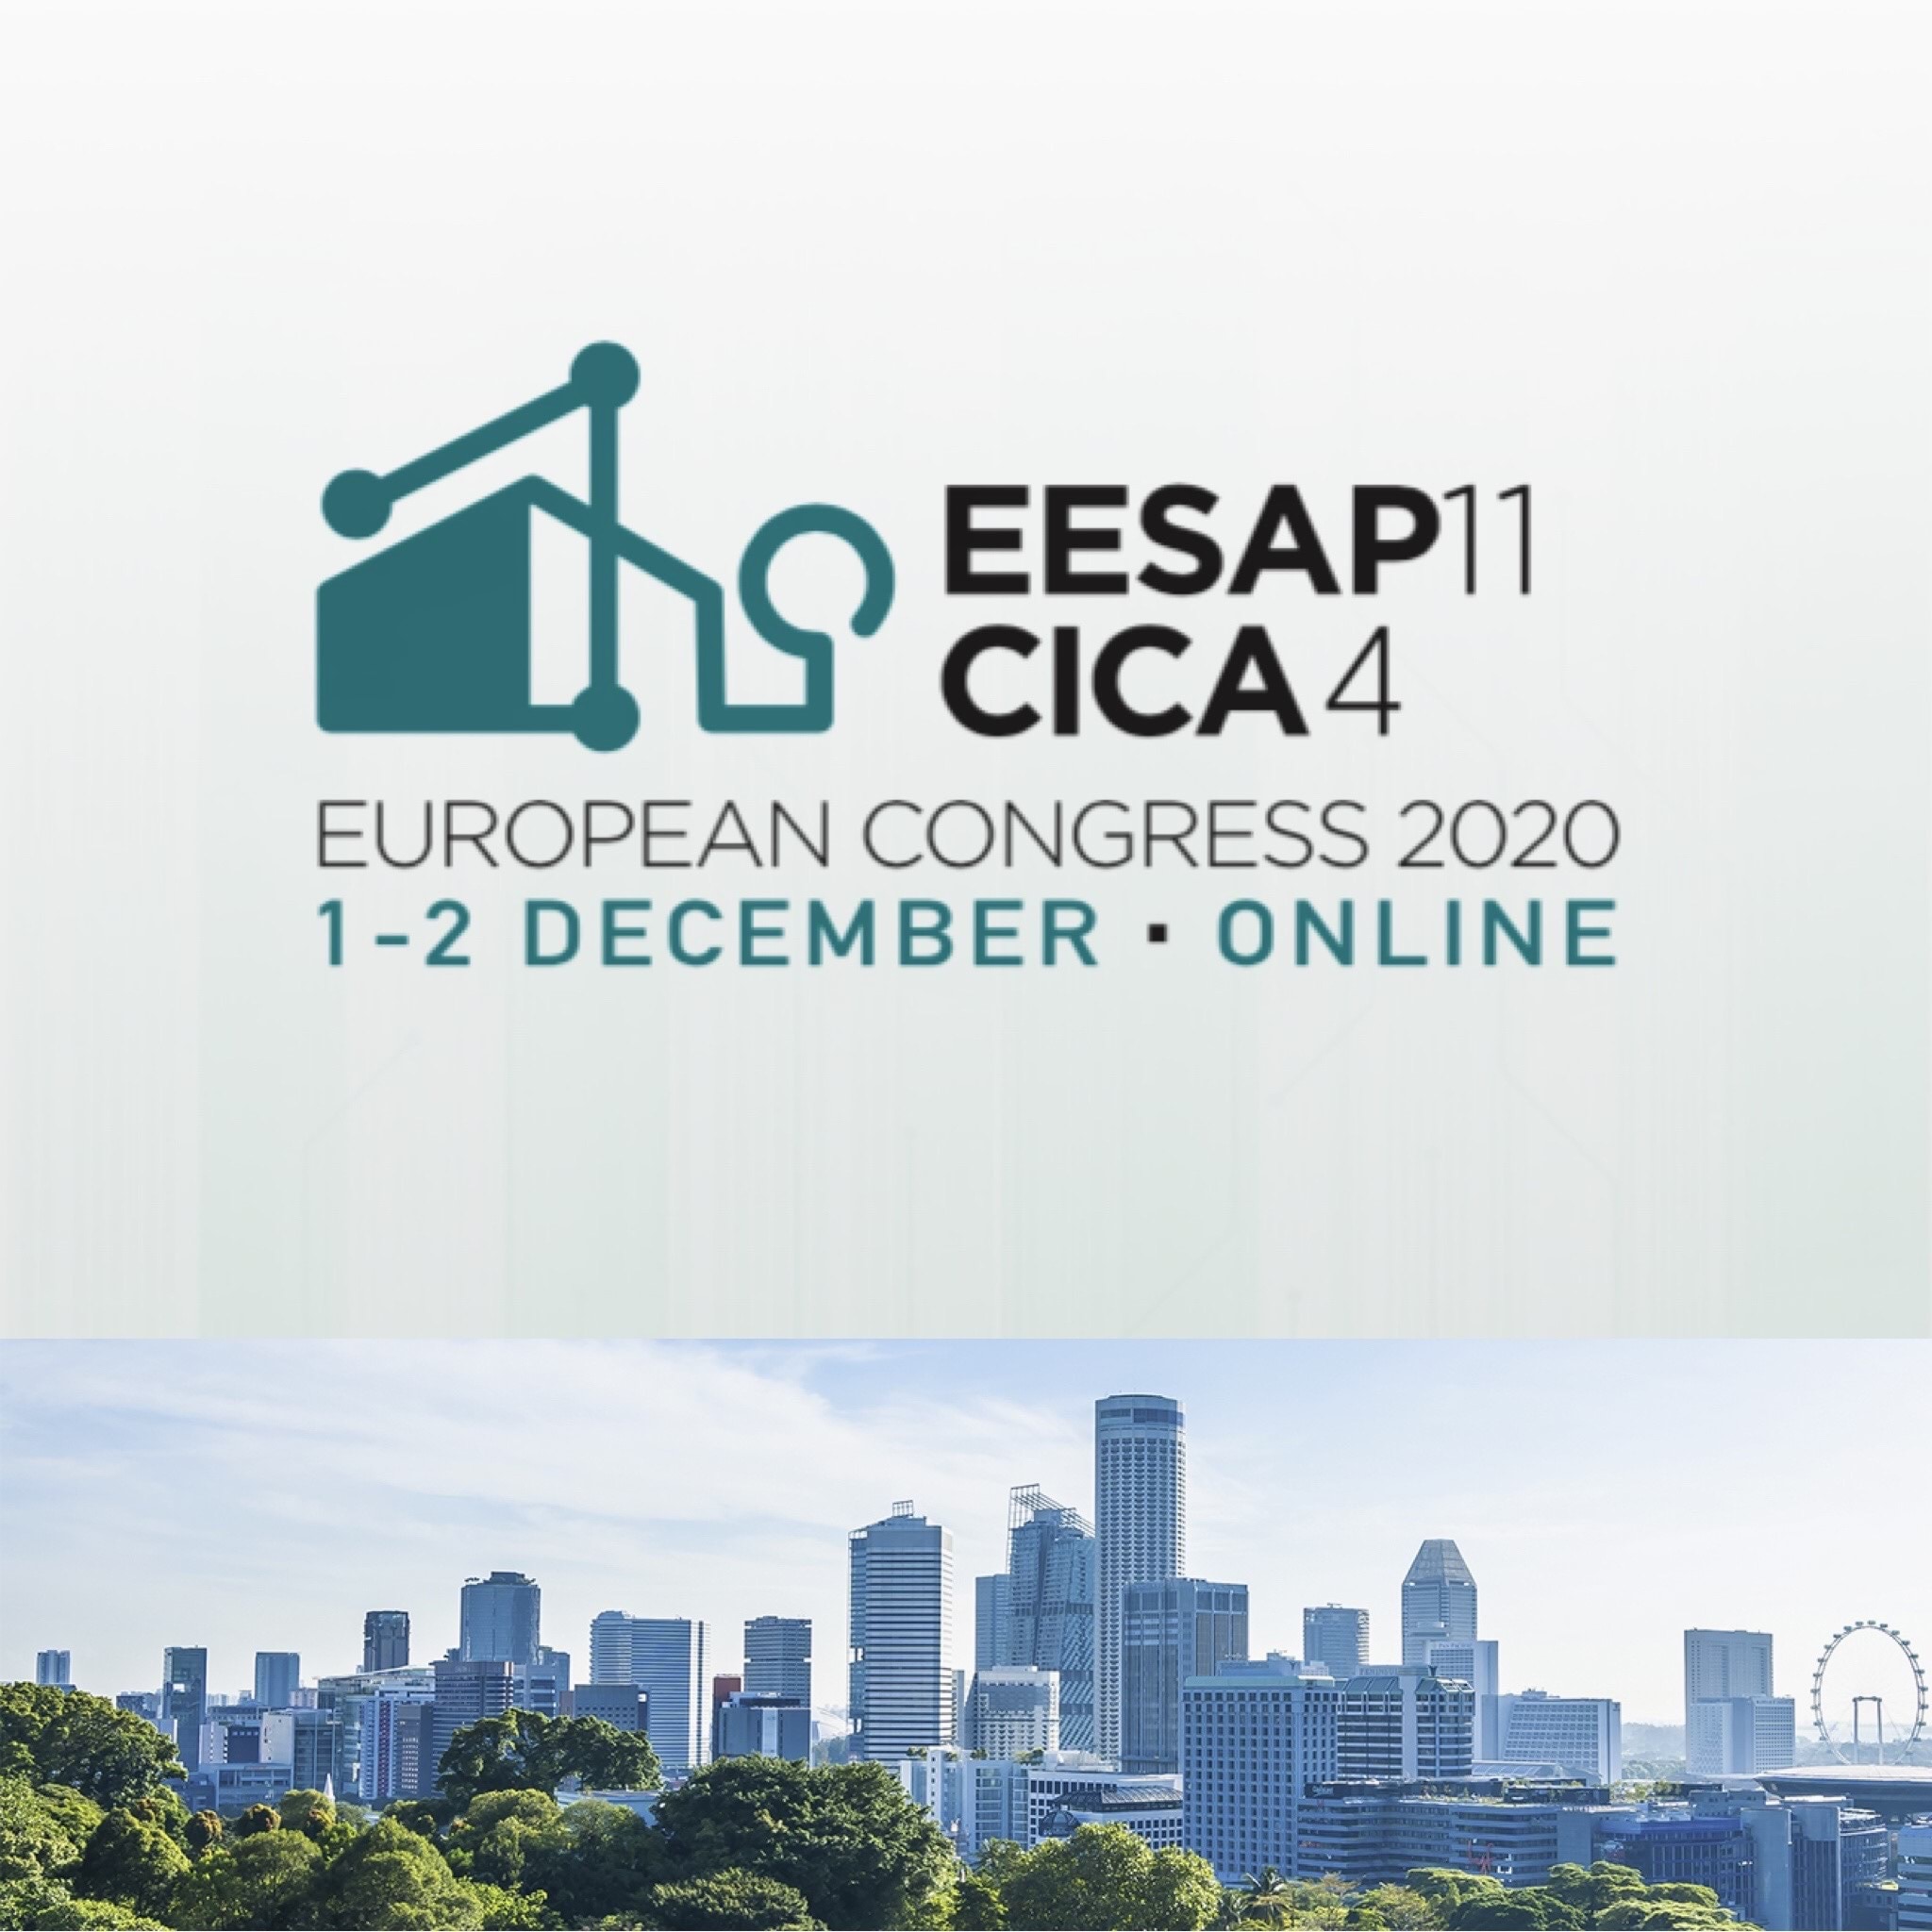 Llega el Congreso EESAP11 + CICA4 online